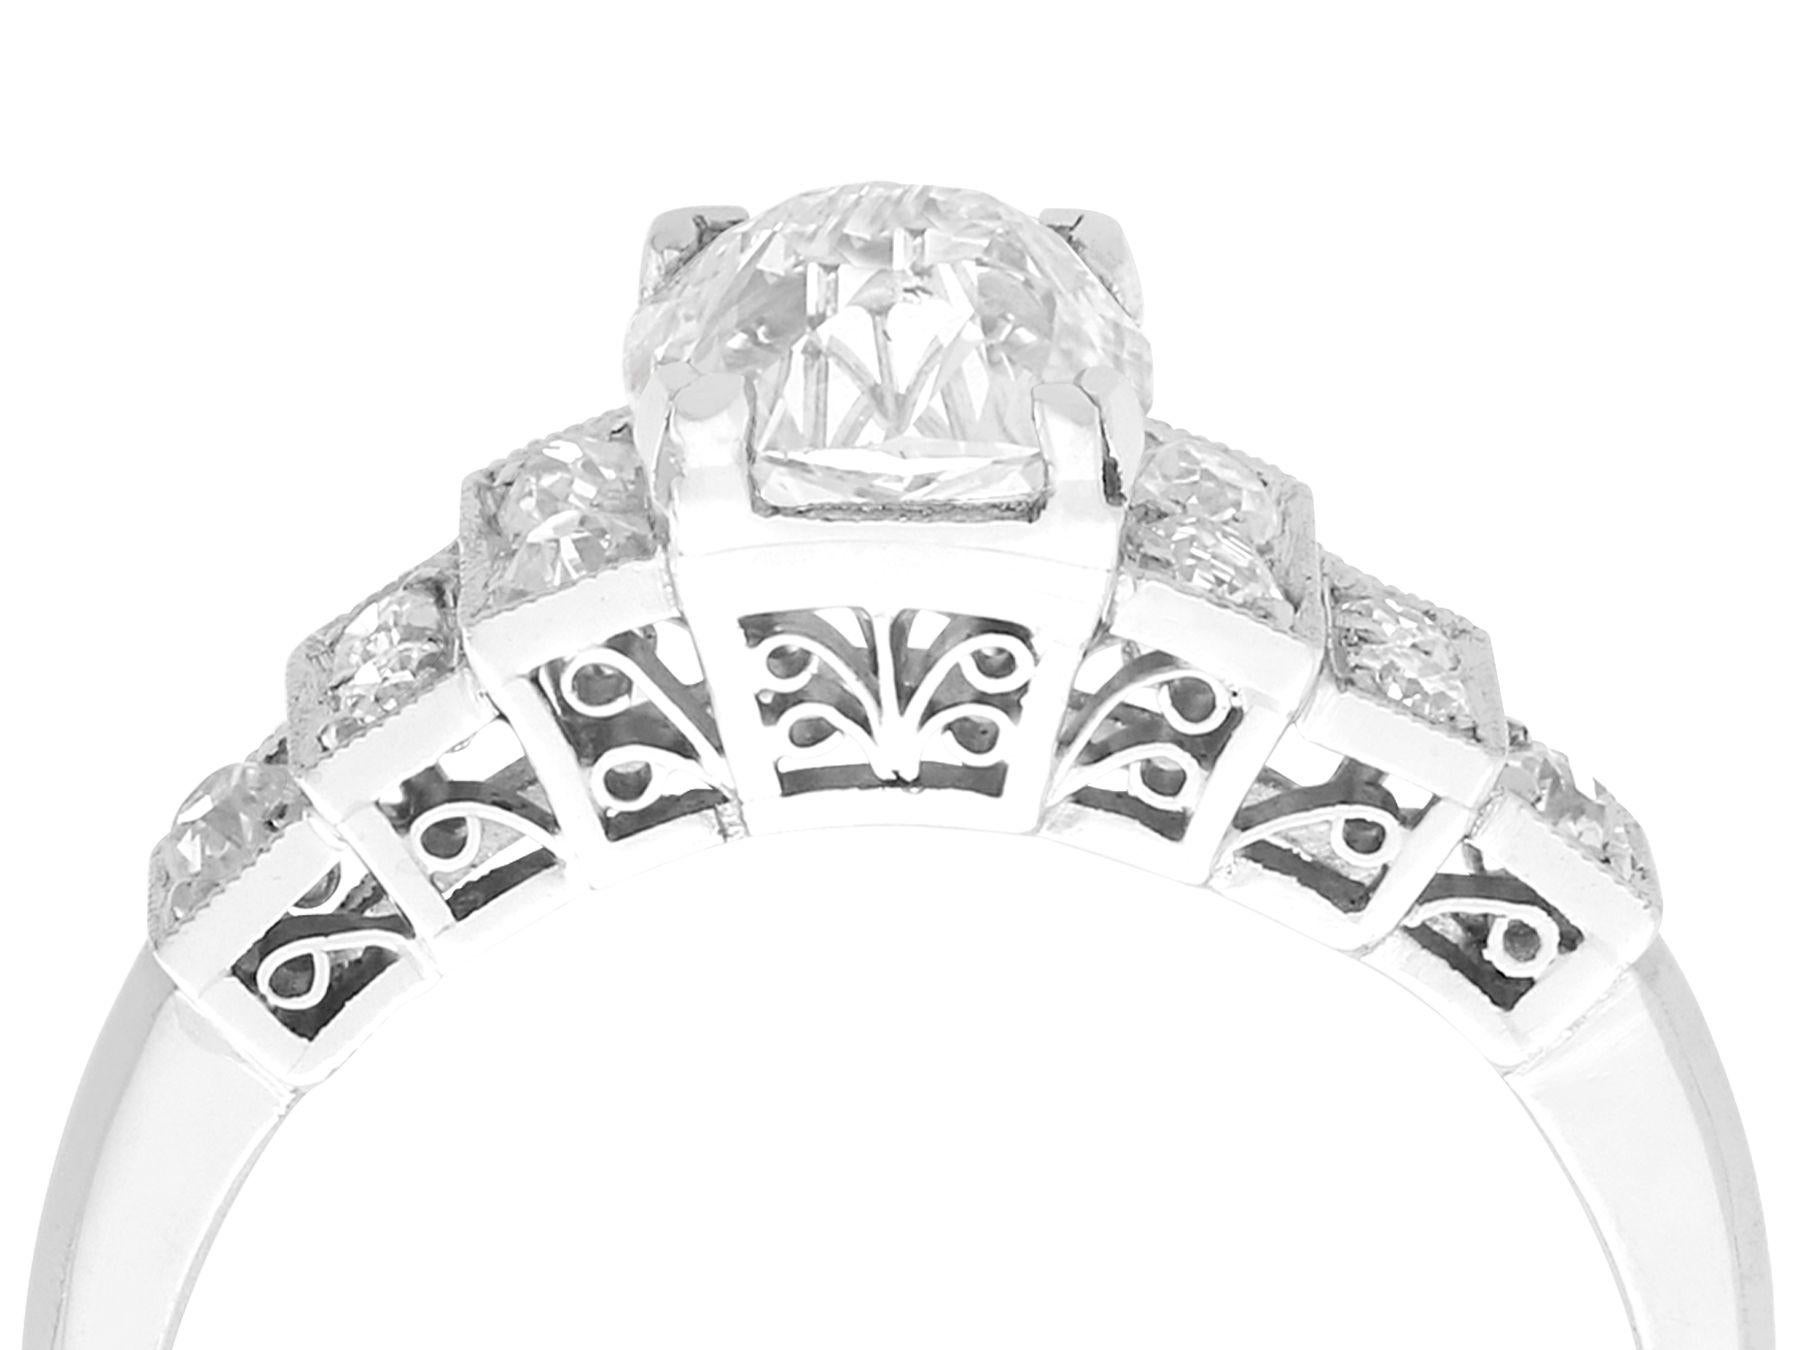 Ein atemberaubender antiker 1,33-Karat-Diamant und Vintage-Kleiderring aus Platin; Teil unserer vielfältigen Diamantschmuck- und Nachlassschmuckkollektionen

Dieser atemberaubende, feine und beeindruckende Diamantring mit 1,33 Karat ist aus Platin